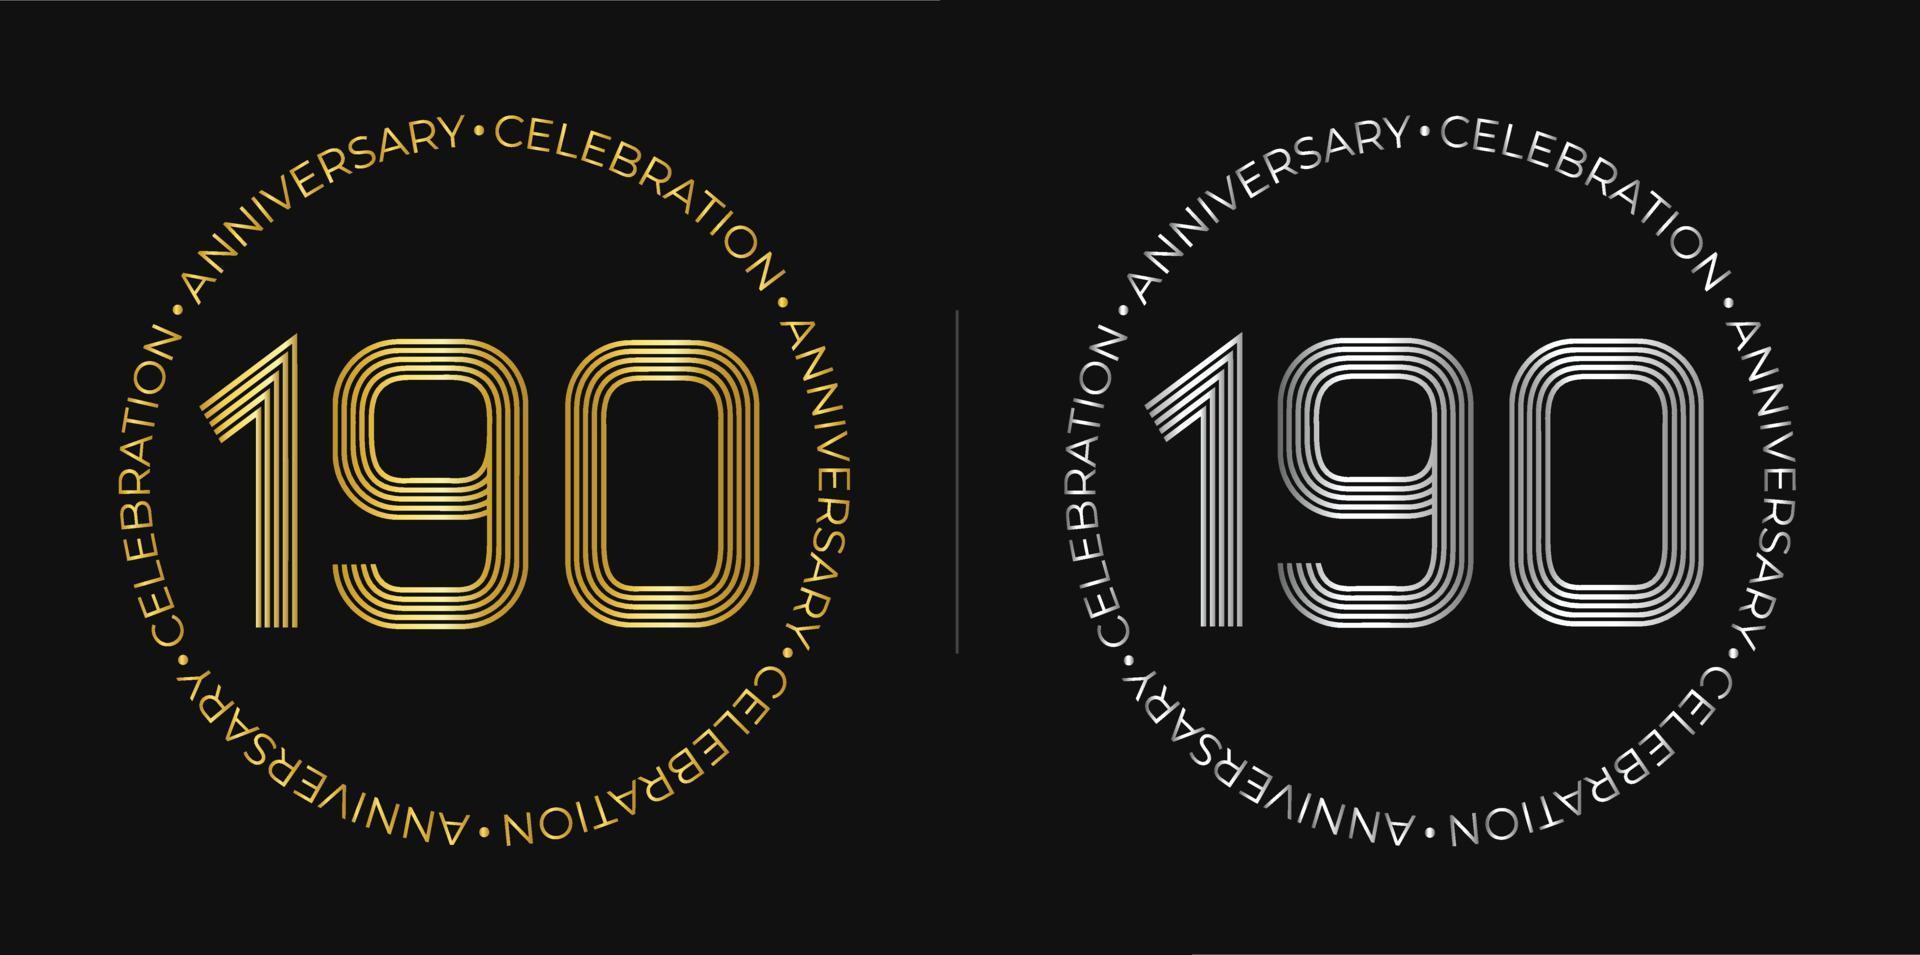 190e anniversaire. bannière de célébration d'anniversaire de cent quatre-vingt-dix ans aux couleurs dorées et argentées. logo circulaire avec un design original de chiffres aux lignes élégantes. vecteur